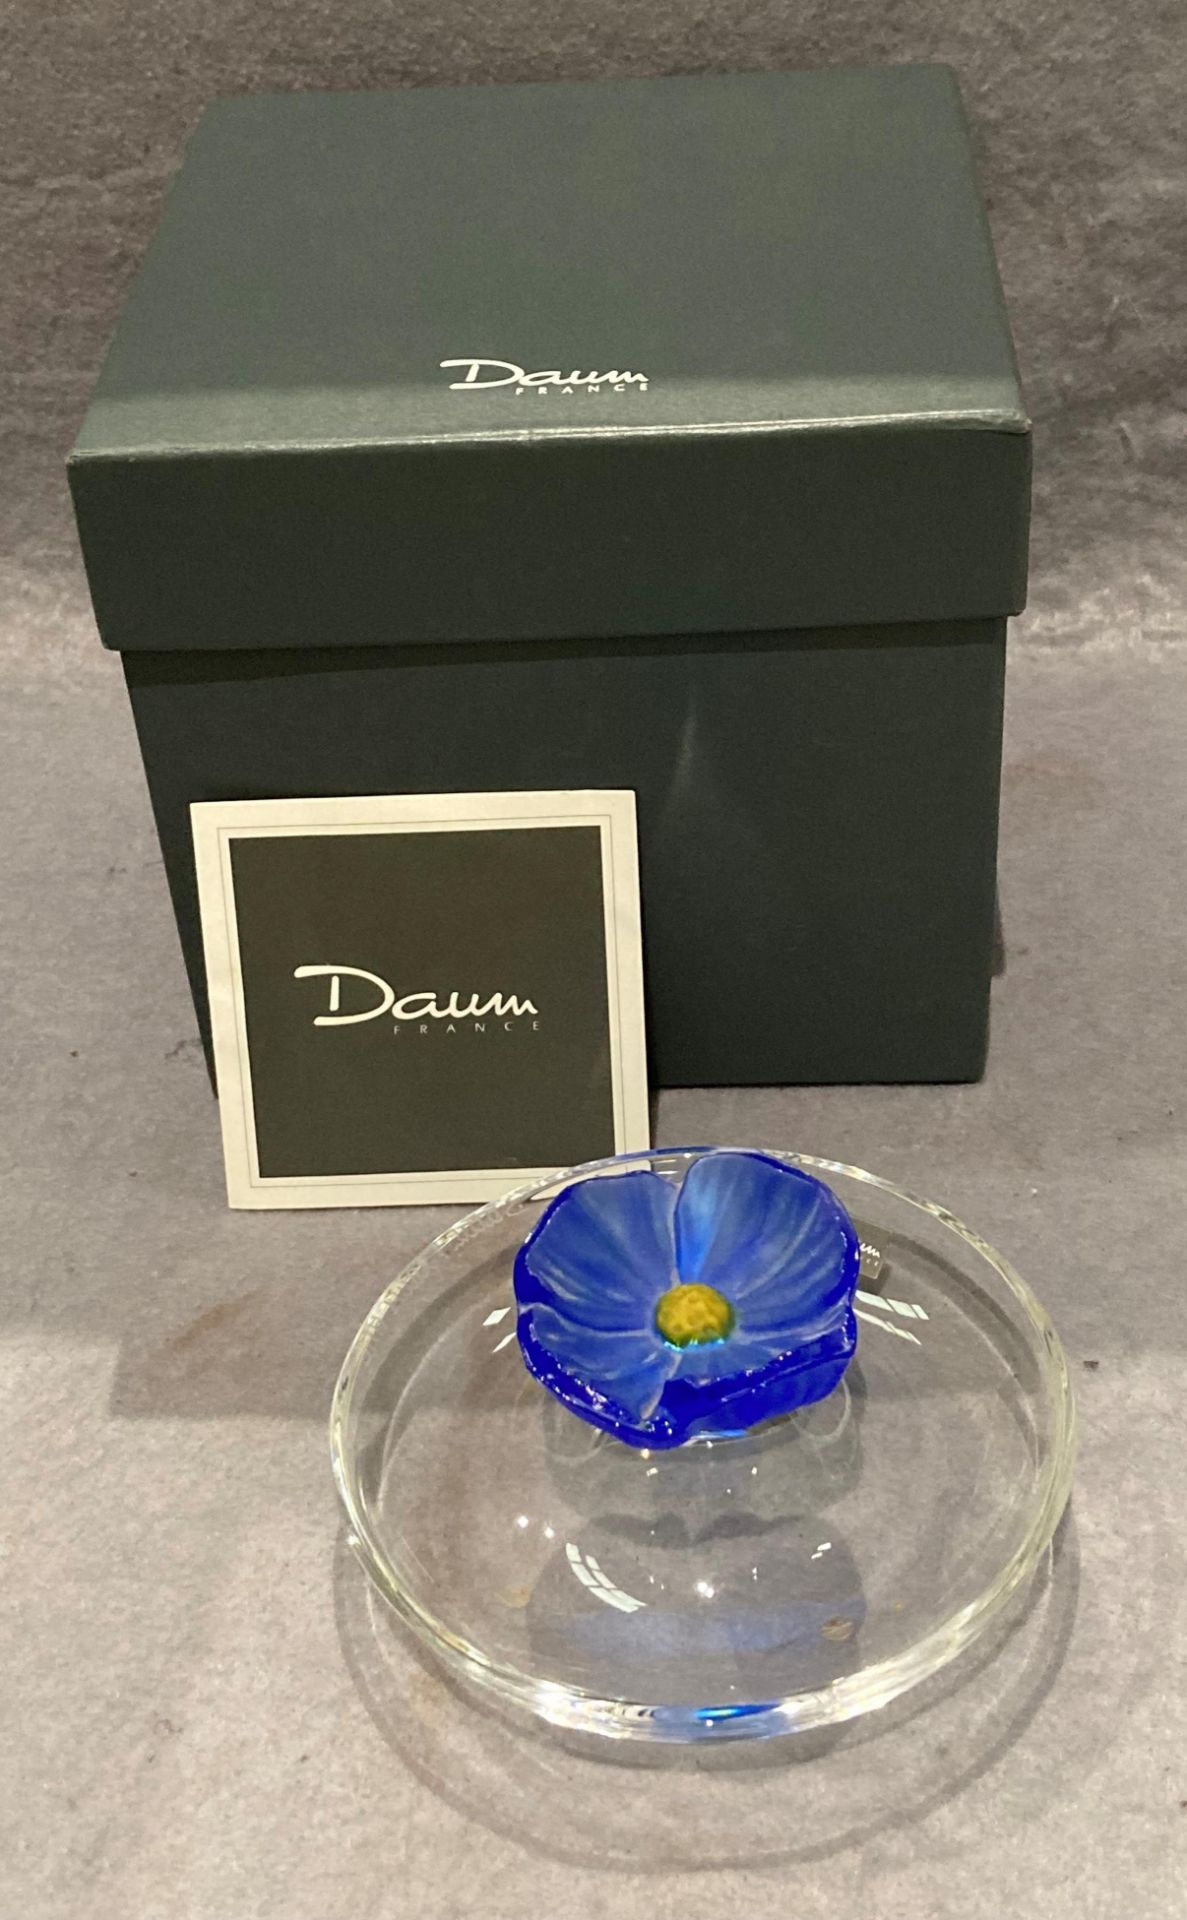 A Daum France Coupelle Cactus Fleur Bleu Franc modern pate de verre glass dish,